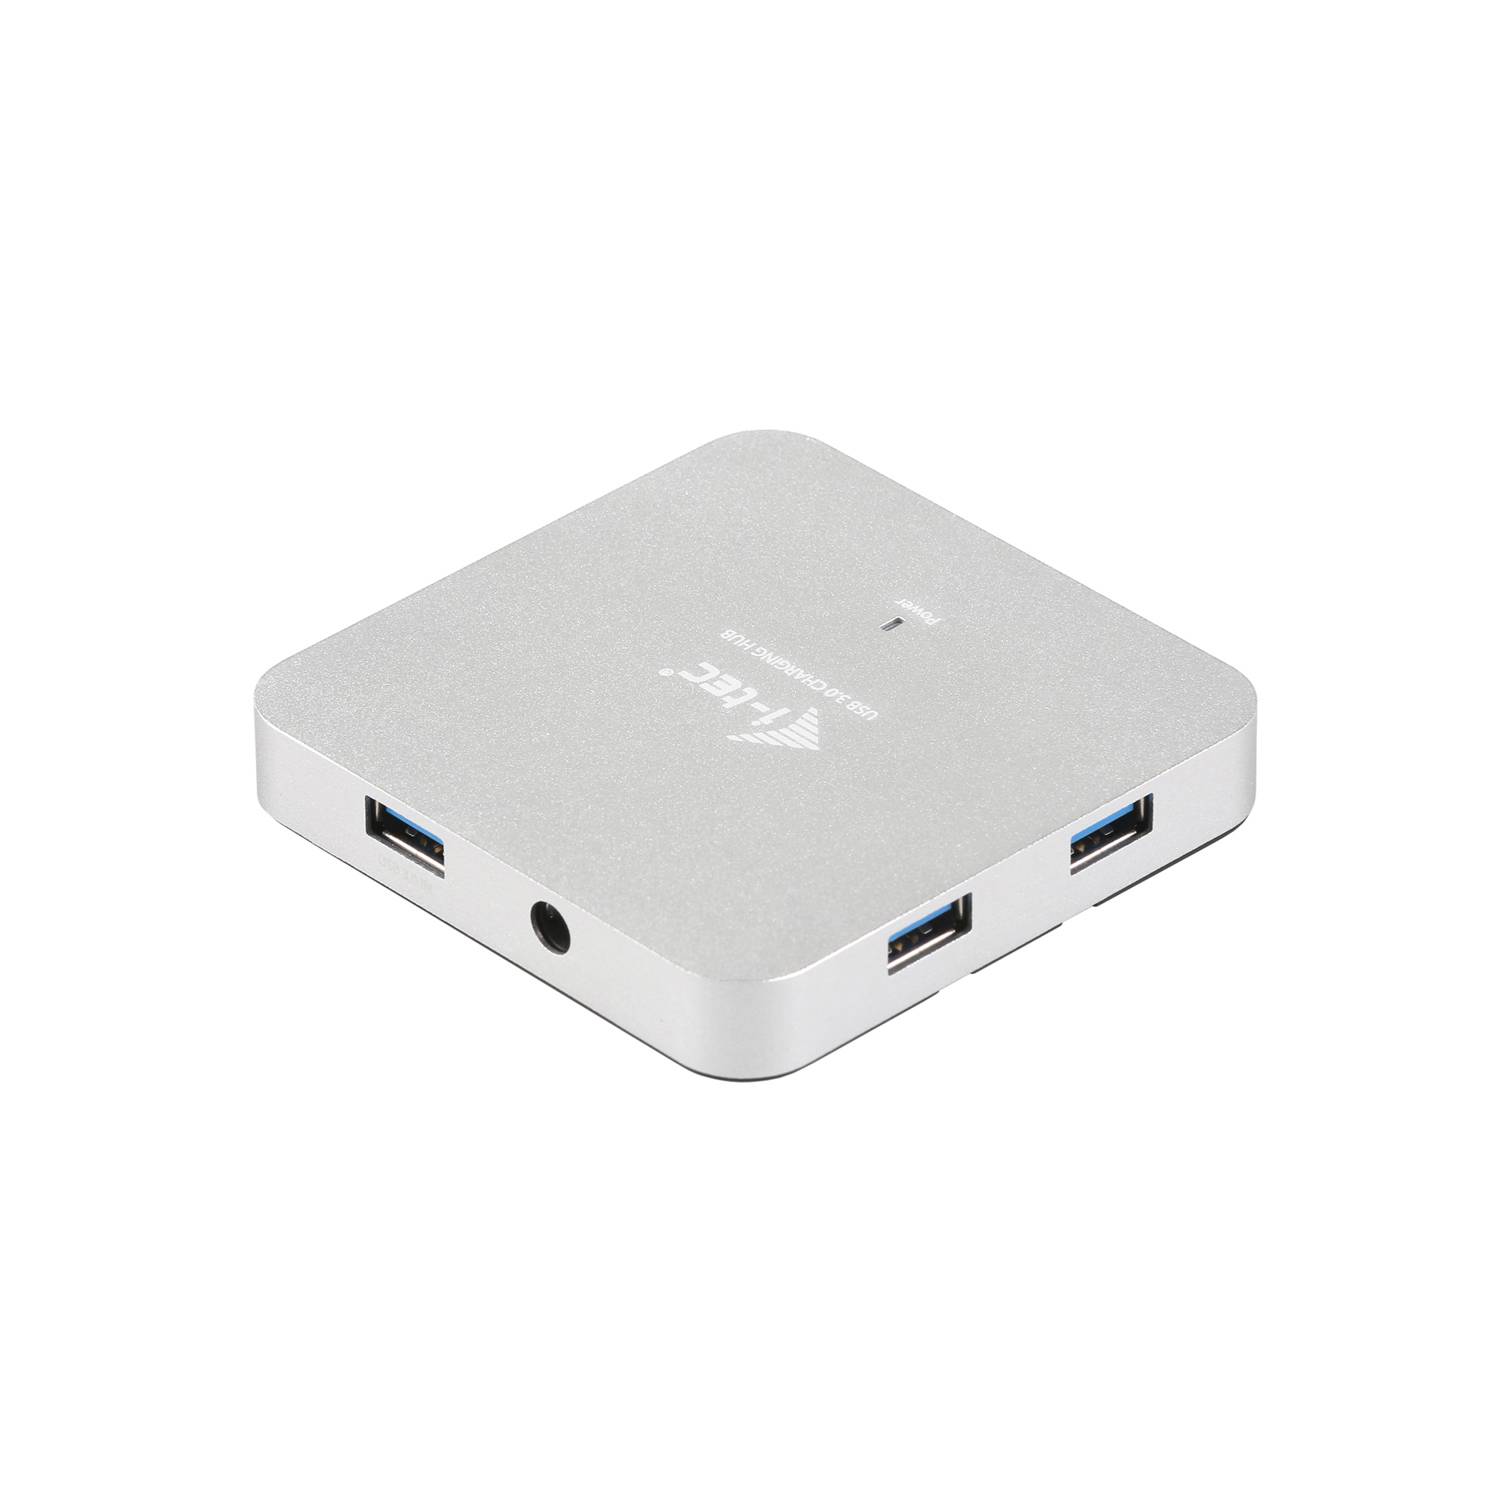 Rca Informatique - image du produit : I-TEC METAL ACTIVE HUB 7 PORT USB 3.0 WITH PS WIN MAC OS